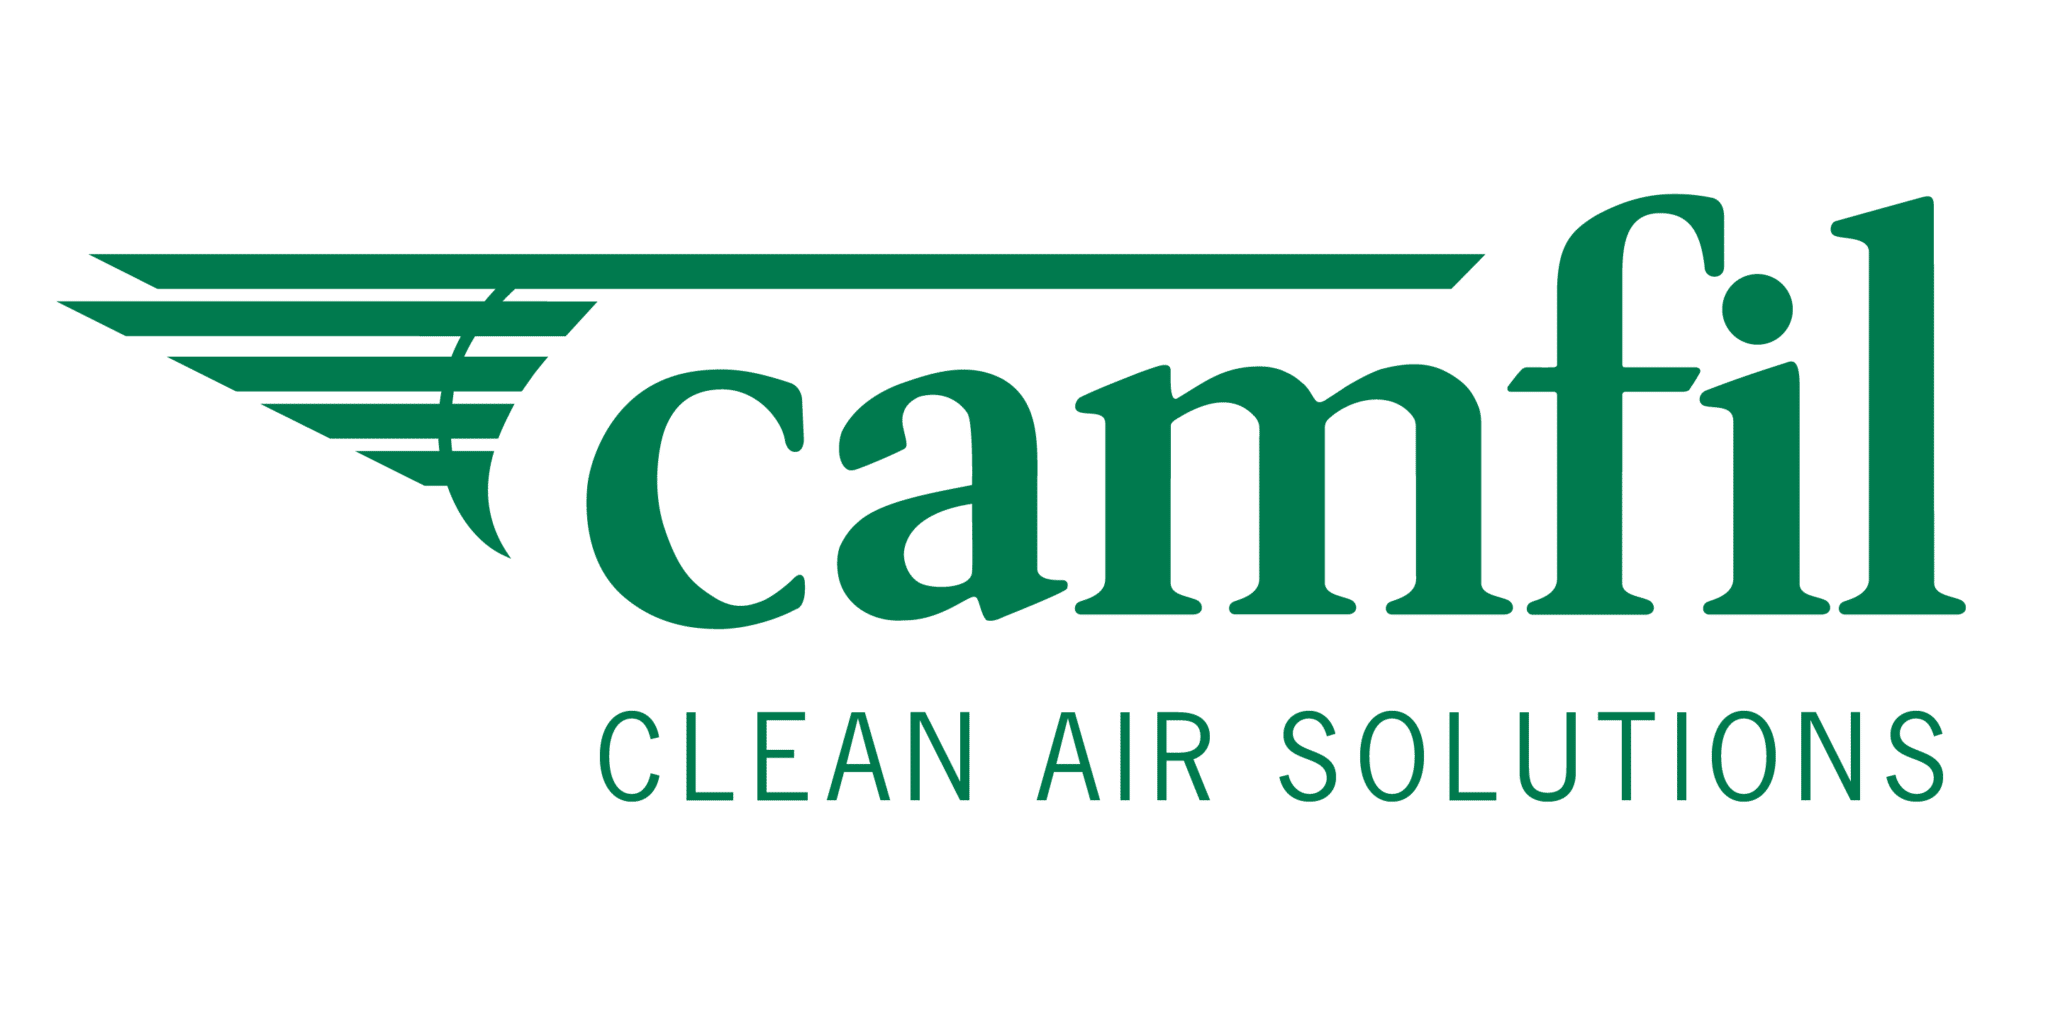 Das Logo von Camfil